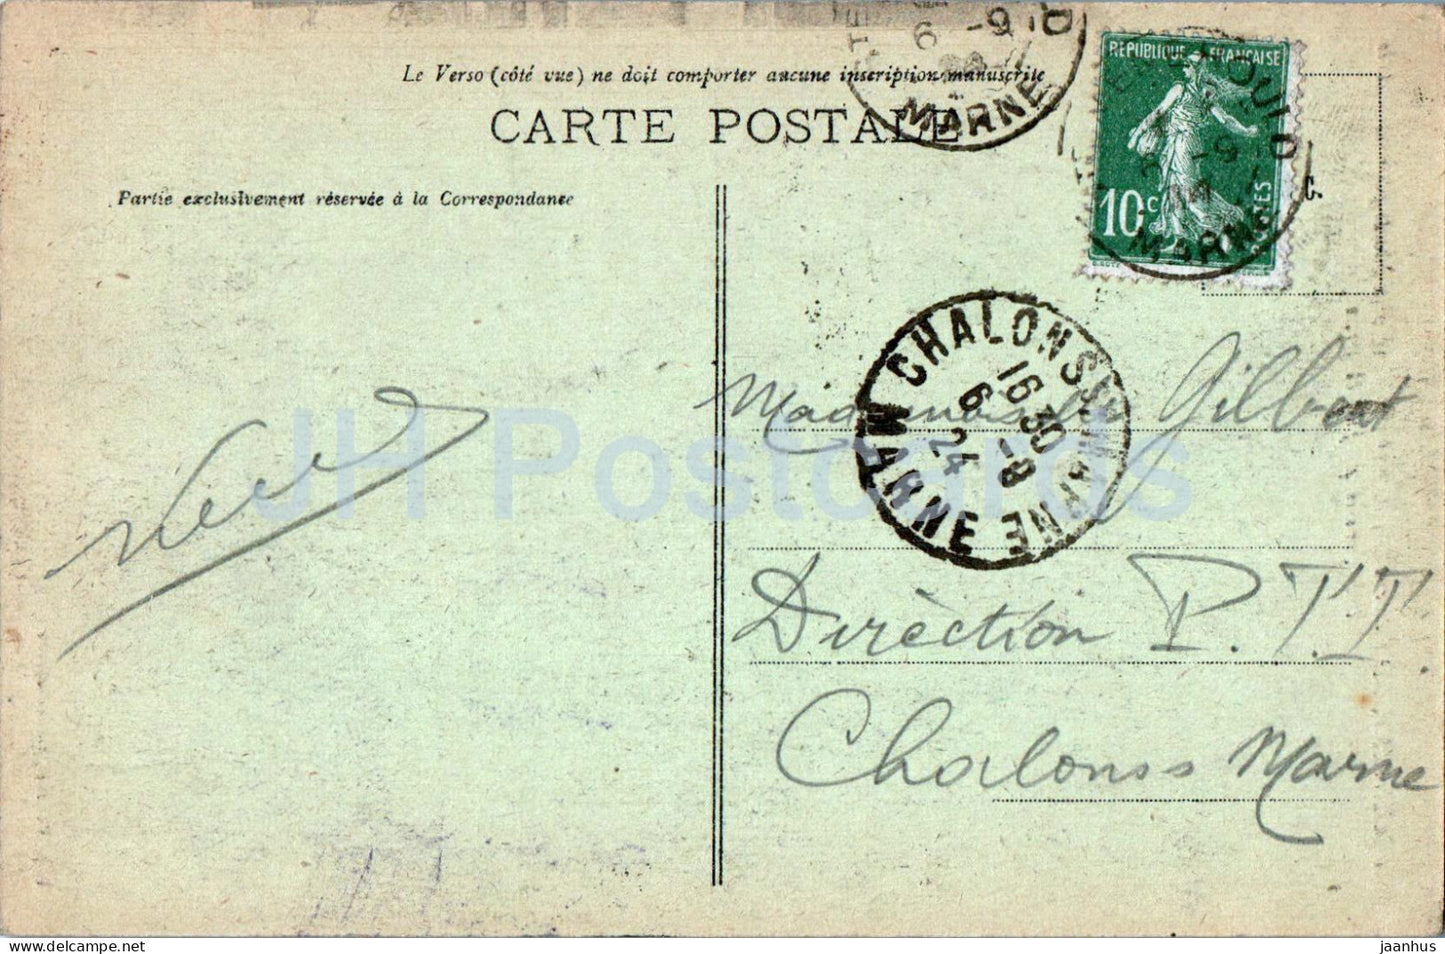 Sainte Menehould - Ste - Monument eleve aux Morts pour la Patrie - alte Postkarte - 1924 - Frankreich - gebraucht